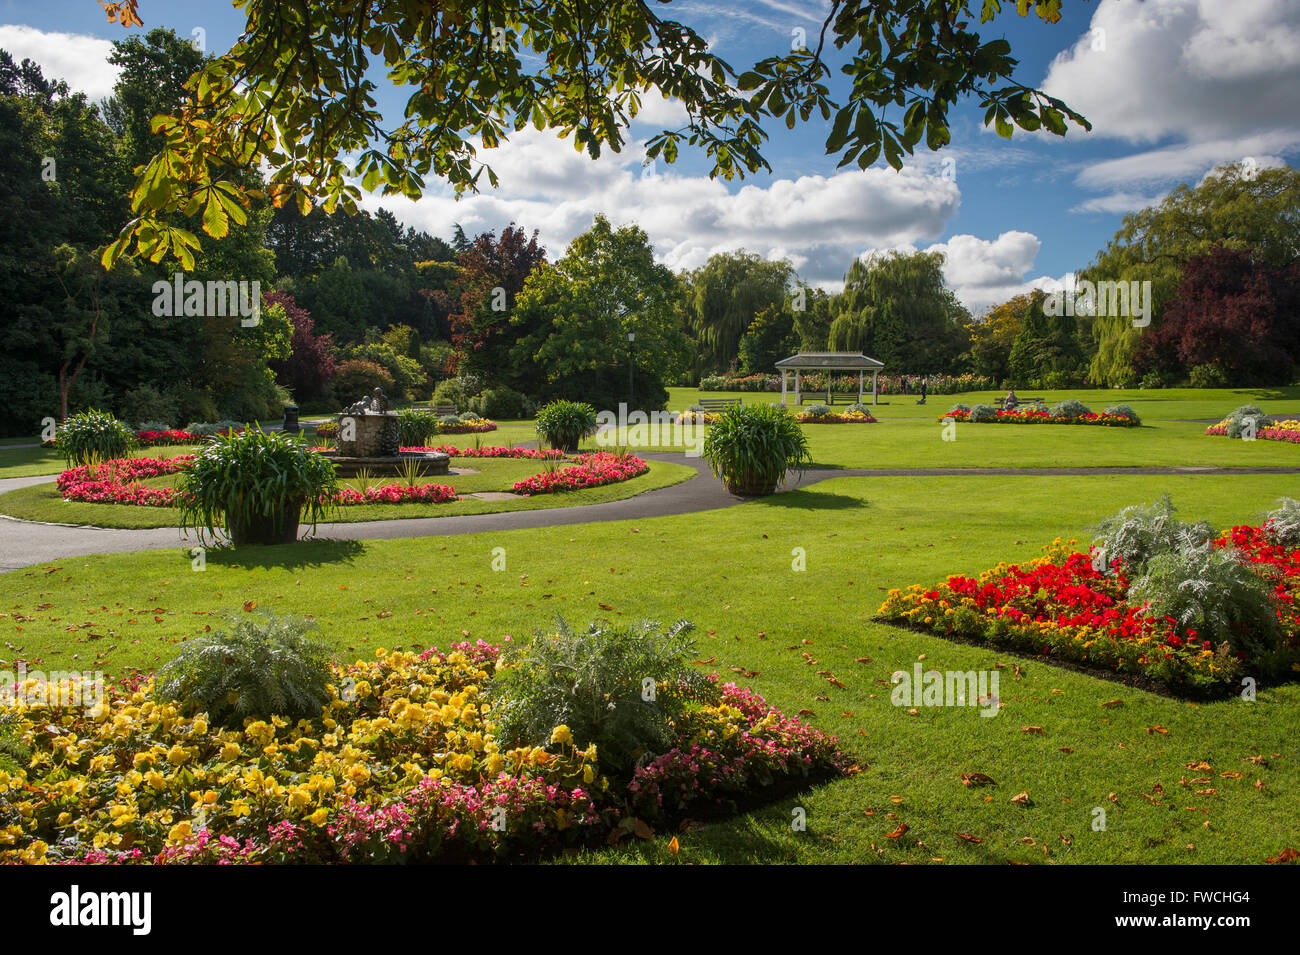 Valley Gardens, Harrogate, Yorkshire, England - schön angelegter Park mit Brunnen und helle, farbenfrohe Blumenbeete an einem sonnigen Sommertag. Stockfoto